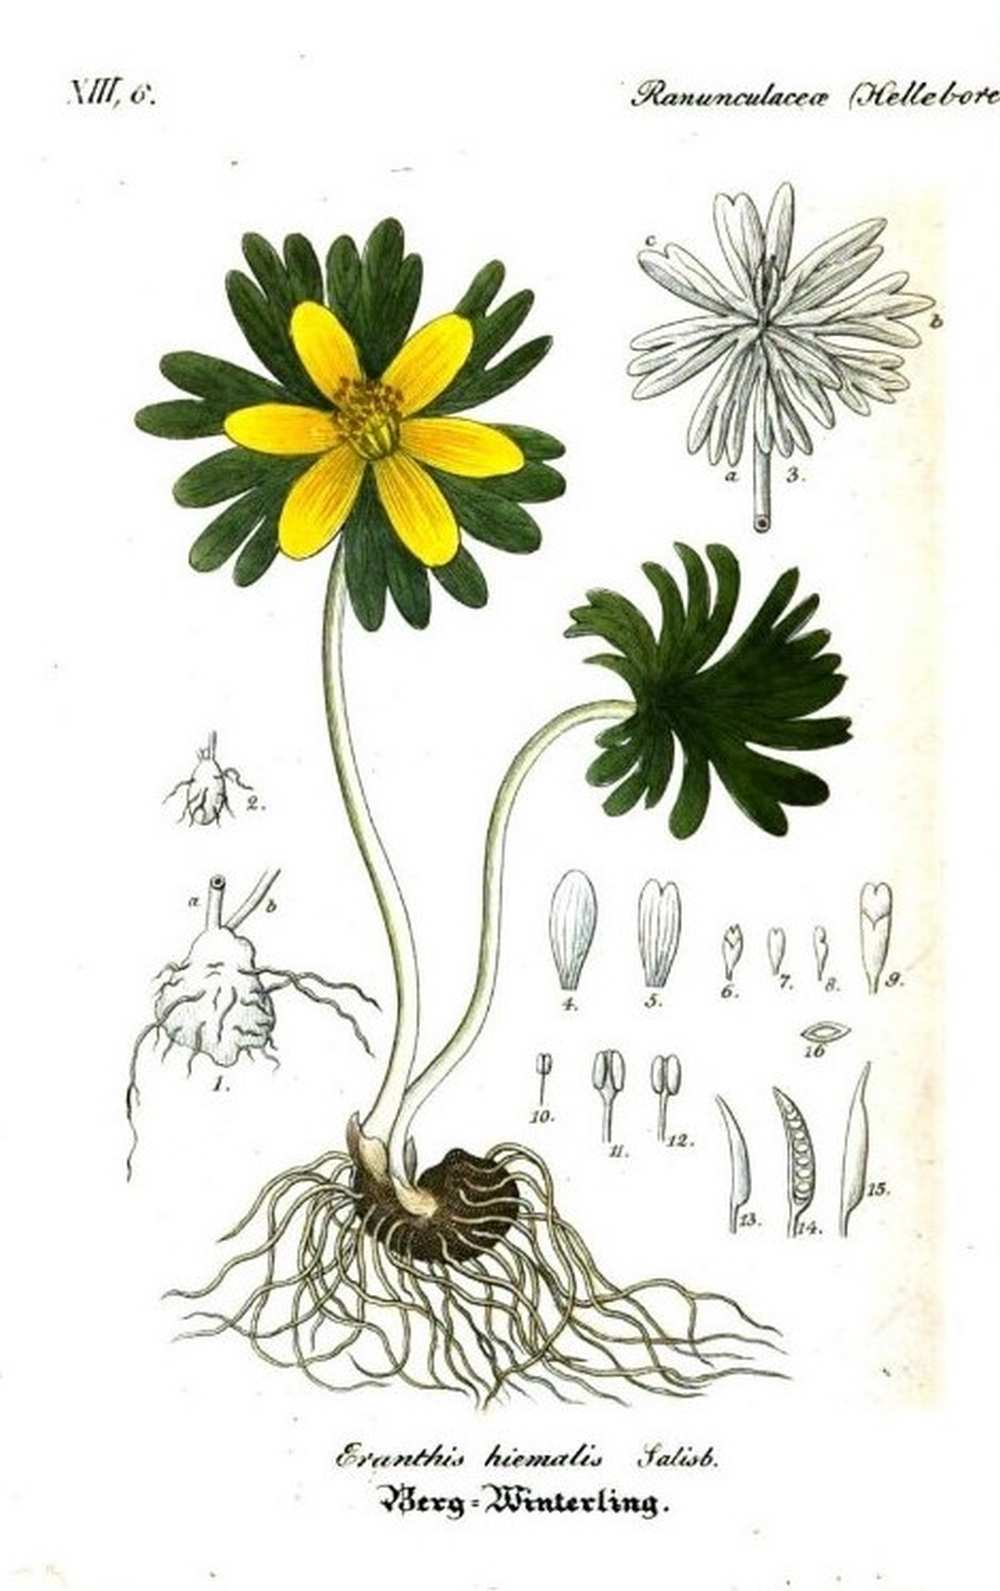 Eranthis hiemalis Salisbury. Berg-Winterling. Eredeti metszet. In: Flora von Deutschland, herausgegeben von D. F. L. von Schlechtendal, und Ernst Schenk. F. Mauke, Jena, 1841–1864., 2. kötet: 1842. – HathiTrust Digital Library https://babel.hathitrust.org/cgi/pt?id=hvd.32044107277246&view=1up&seq=4<br /><br />